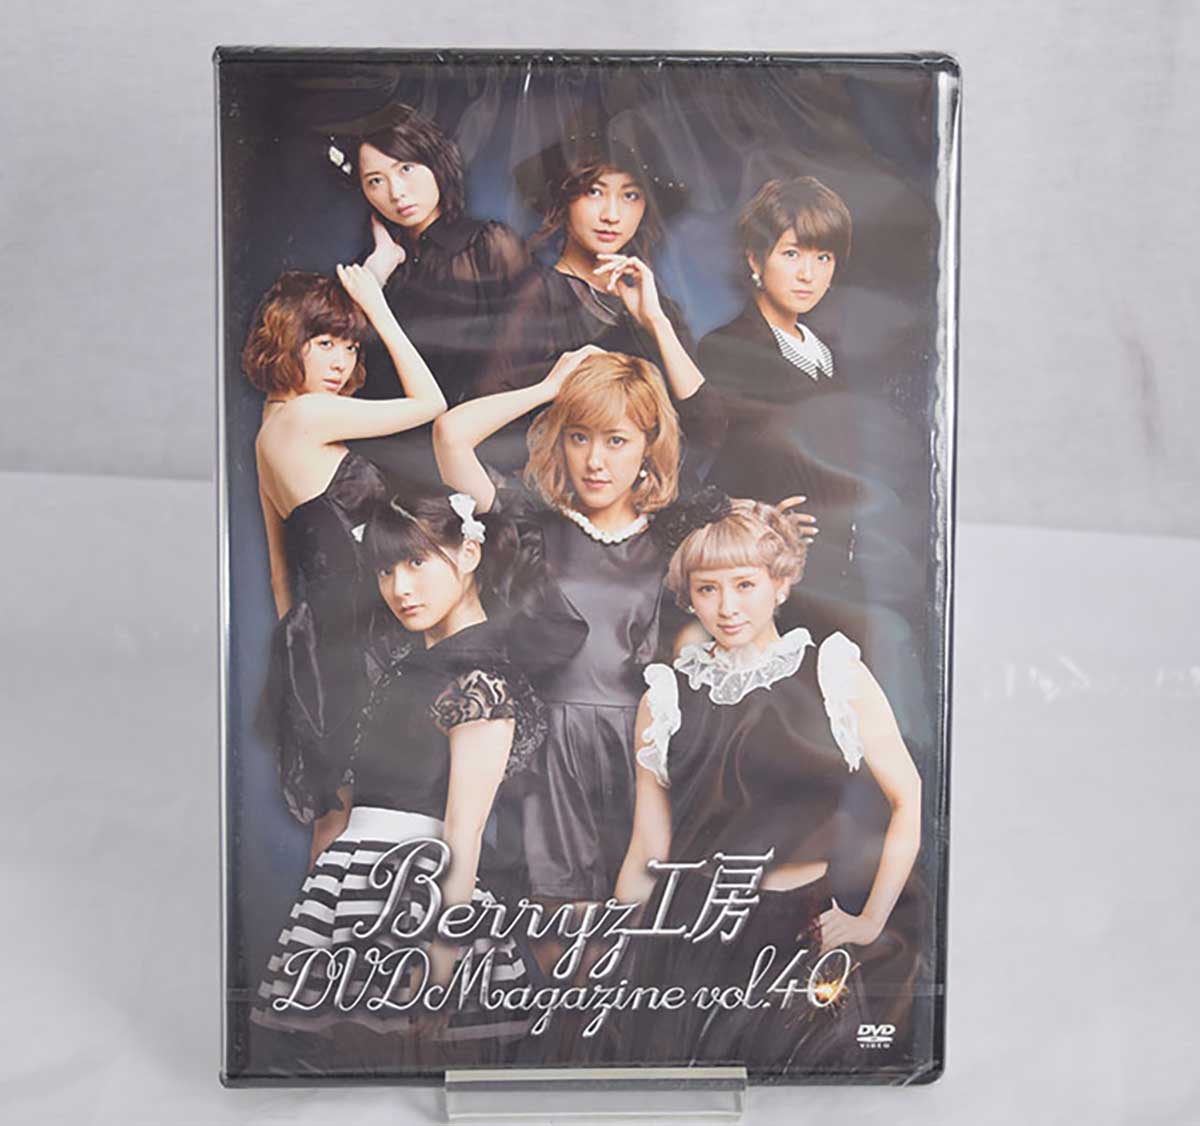 【中古】Berryz工房 DVDマガジン DVD Magazine vol.40 BKBE-39